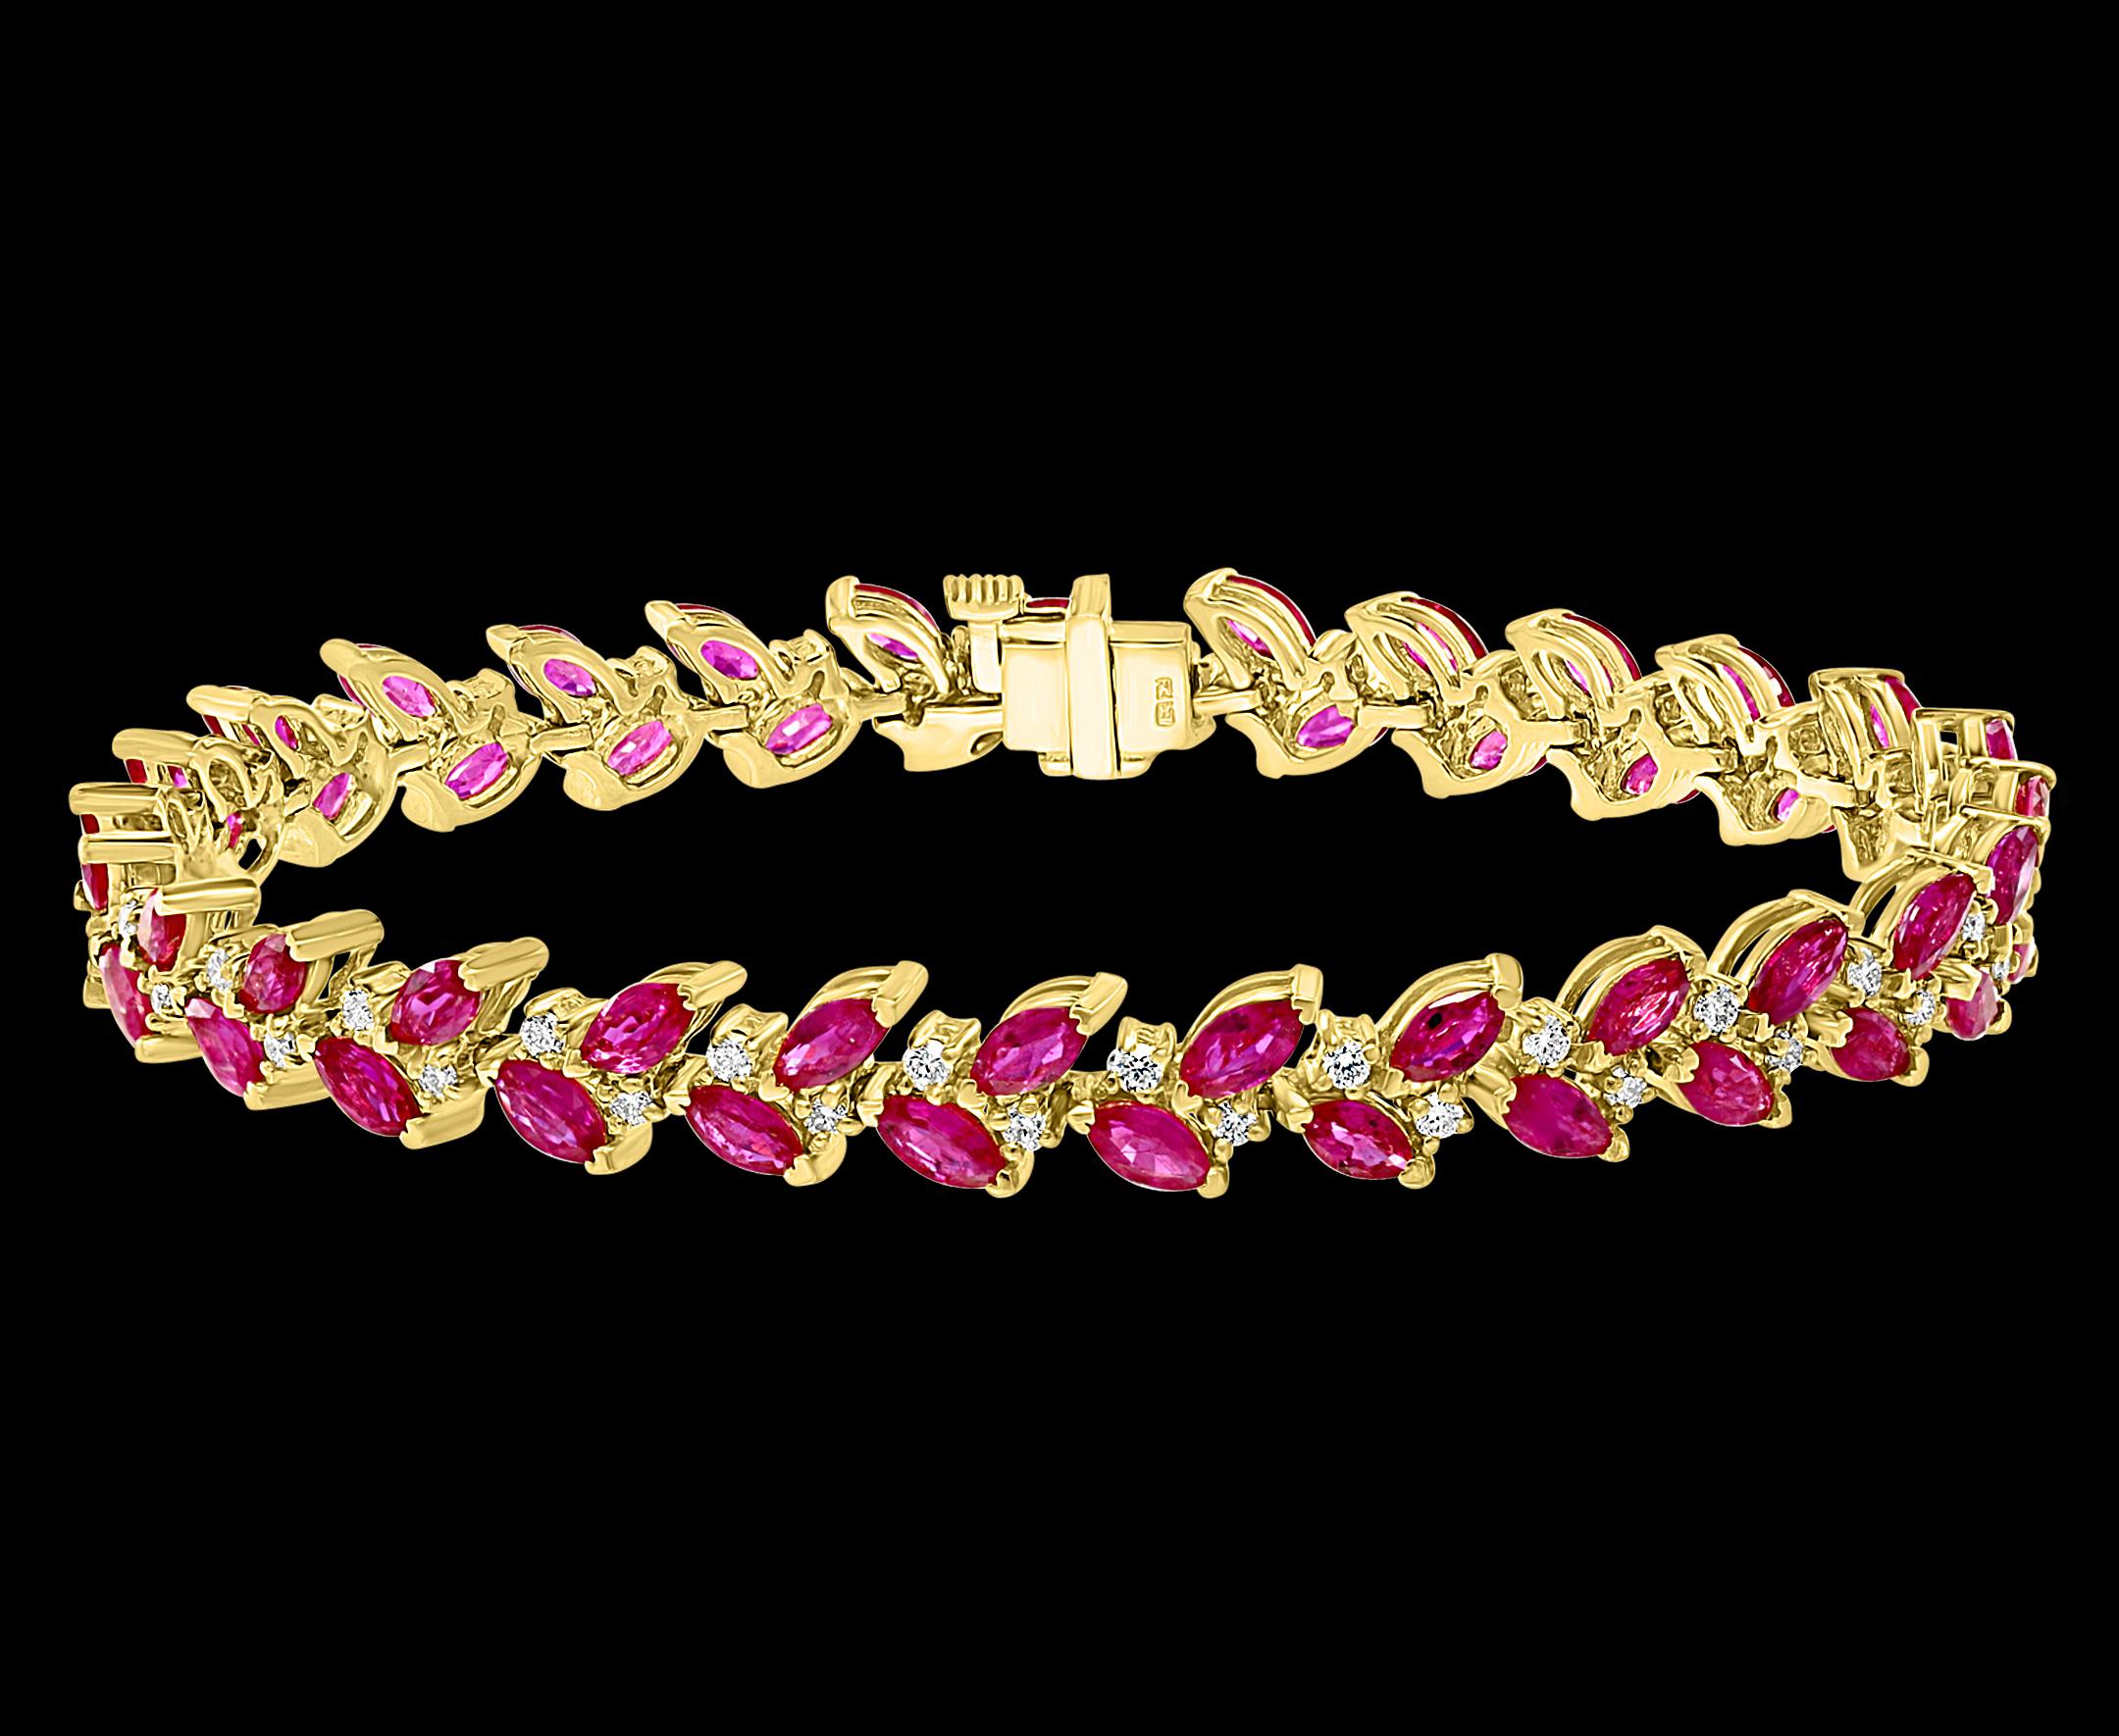  Dieses Armband hat einen Marquise-Schliff  Rubine in 14k Gelbgold.
 zackenfassungen, die durch glitzernde Diamanten im Rundschliff wunderbar ergänzt werden. Zusammen machen diese Elemente dieses Armband wunderschön. Dies sind natürliche Rubine
 Sie